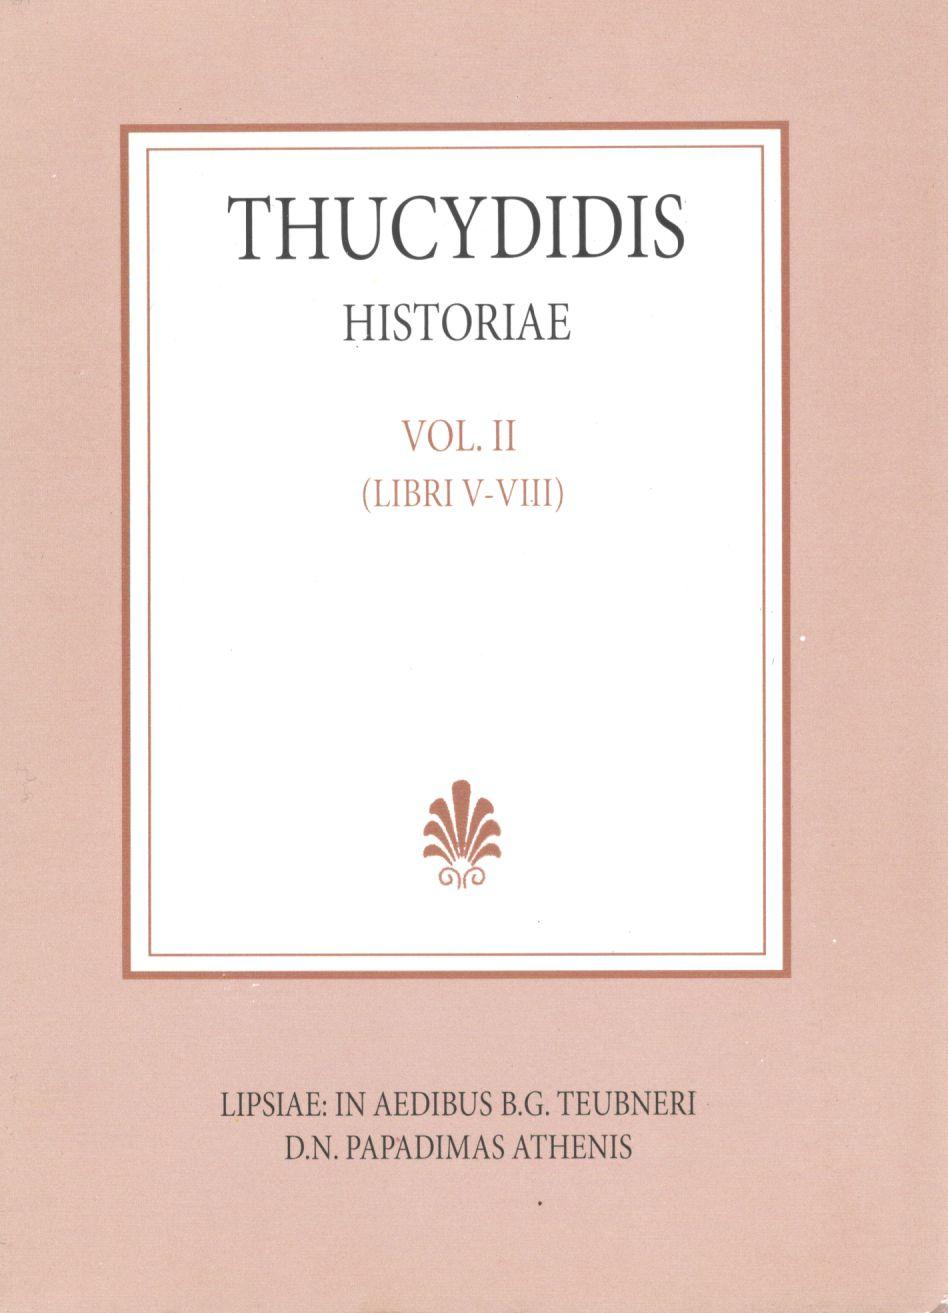 Thucydidis, Historiae, Vol. II, Libri V-VIII [Θουκυδίδου, Ιστορίαι, τ. Β']